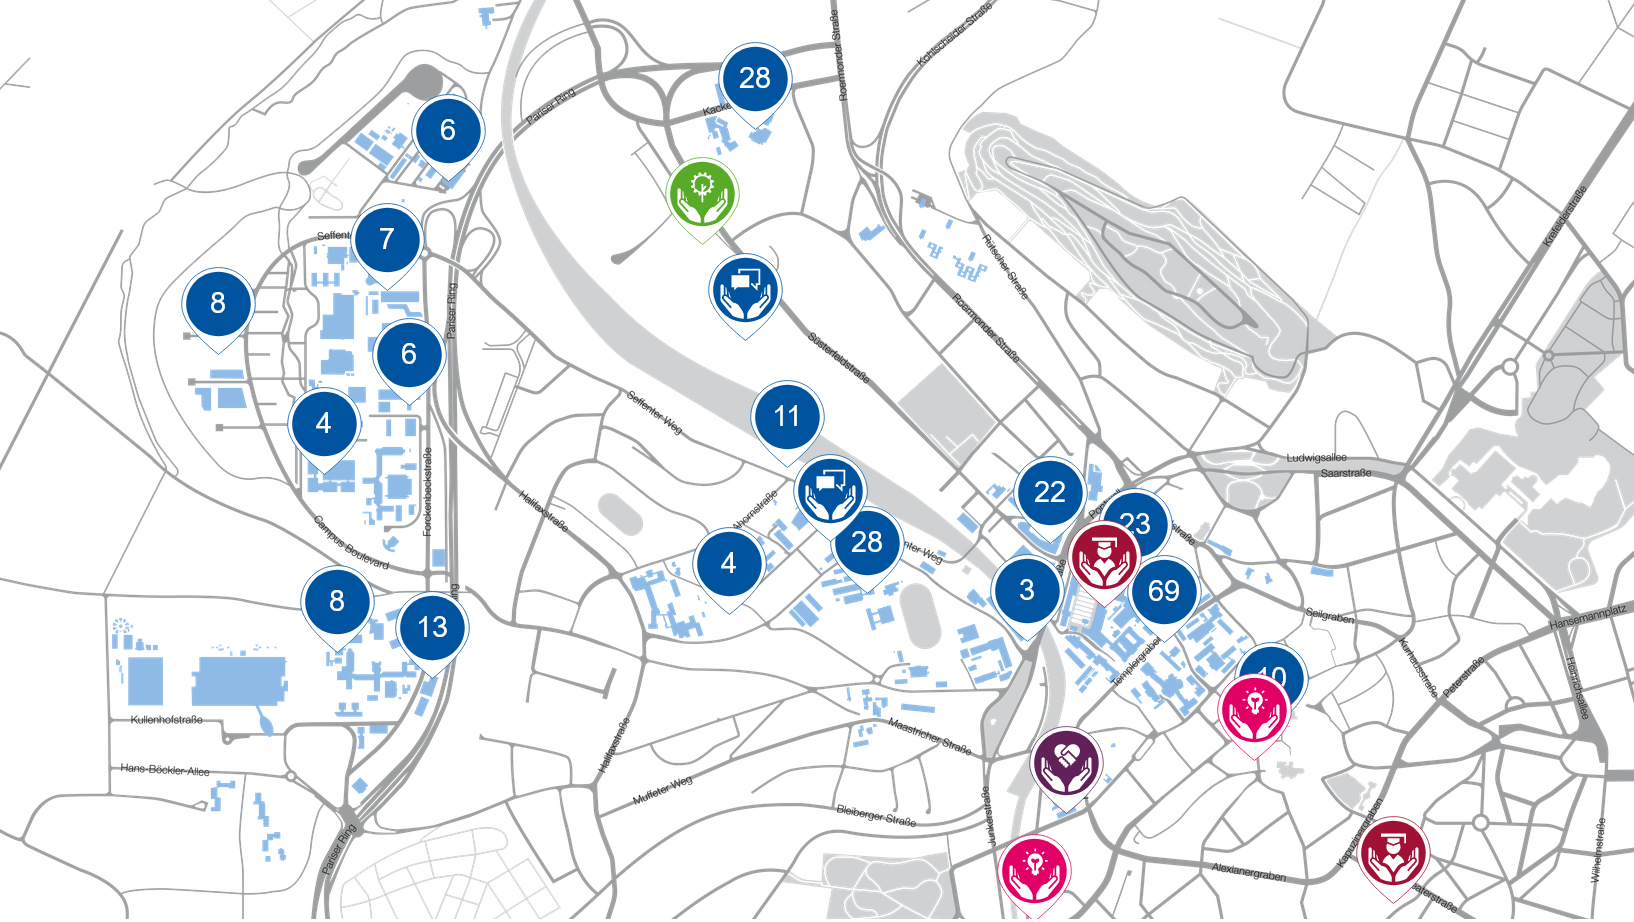 Das Bild zeigte eine schematische Karte des RWTH Campus. Auf der Karte sind Kreise mit Zahlen und farbigen Symbolen an bestimmten Stellen zu sehen. Die Zahlen markieren die räumliche Verortung von Projekten zur Nachhaltigkeit auf dem Campus.